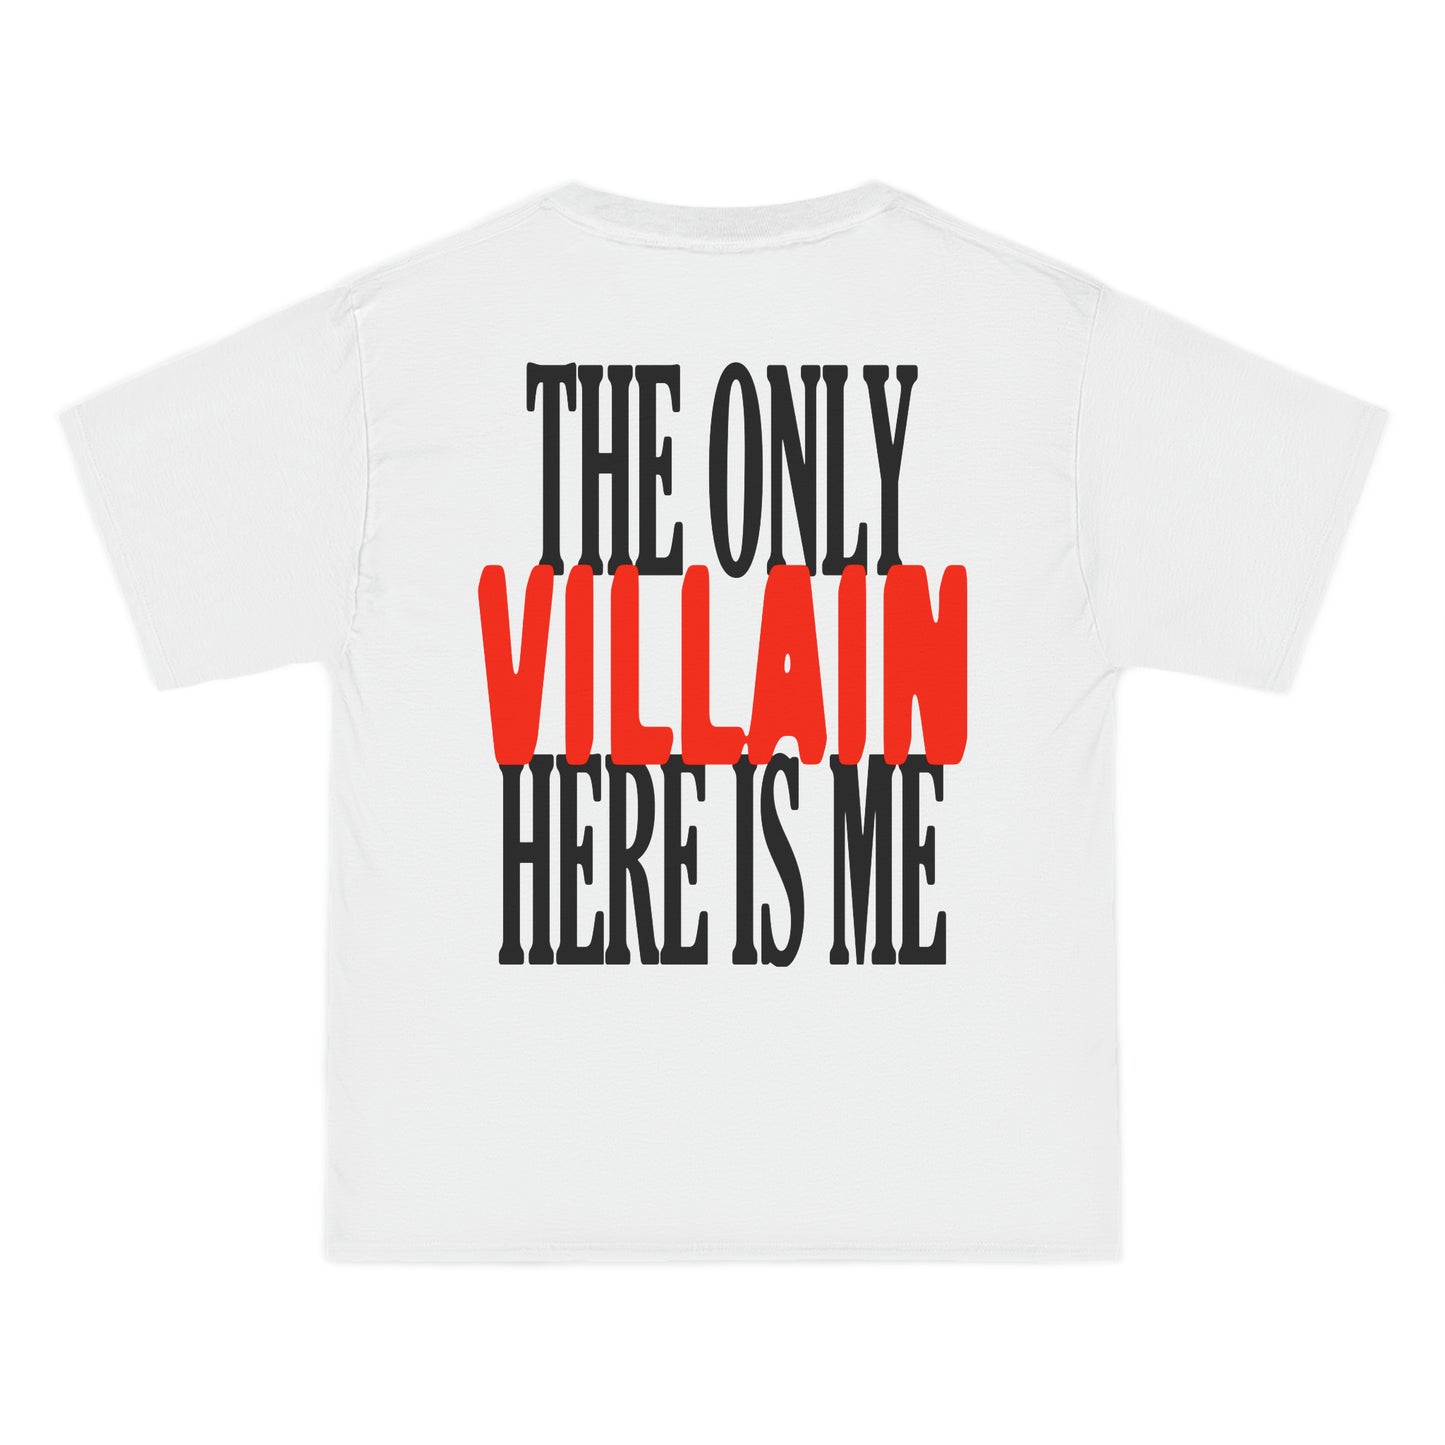 VILLAIN T-Shirt